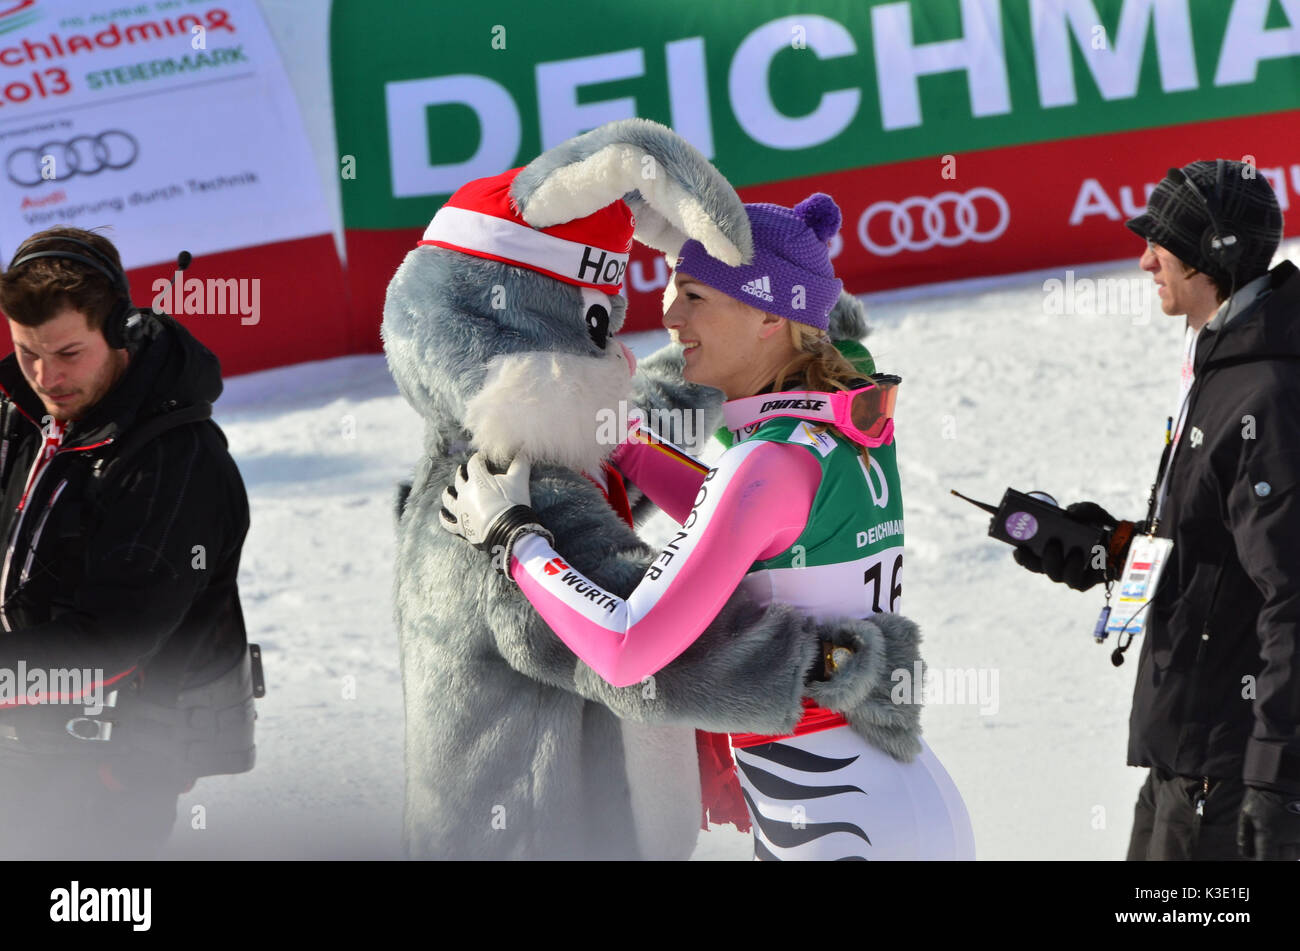 Austria, Styria, Schladming, ski world championship, ski racer, Maria Höfl-Riesch, mascot, Stock Photo